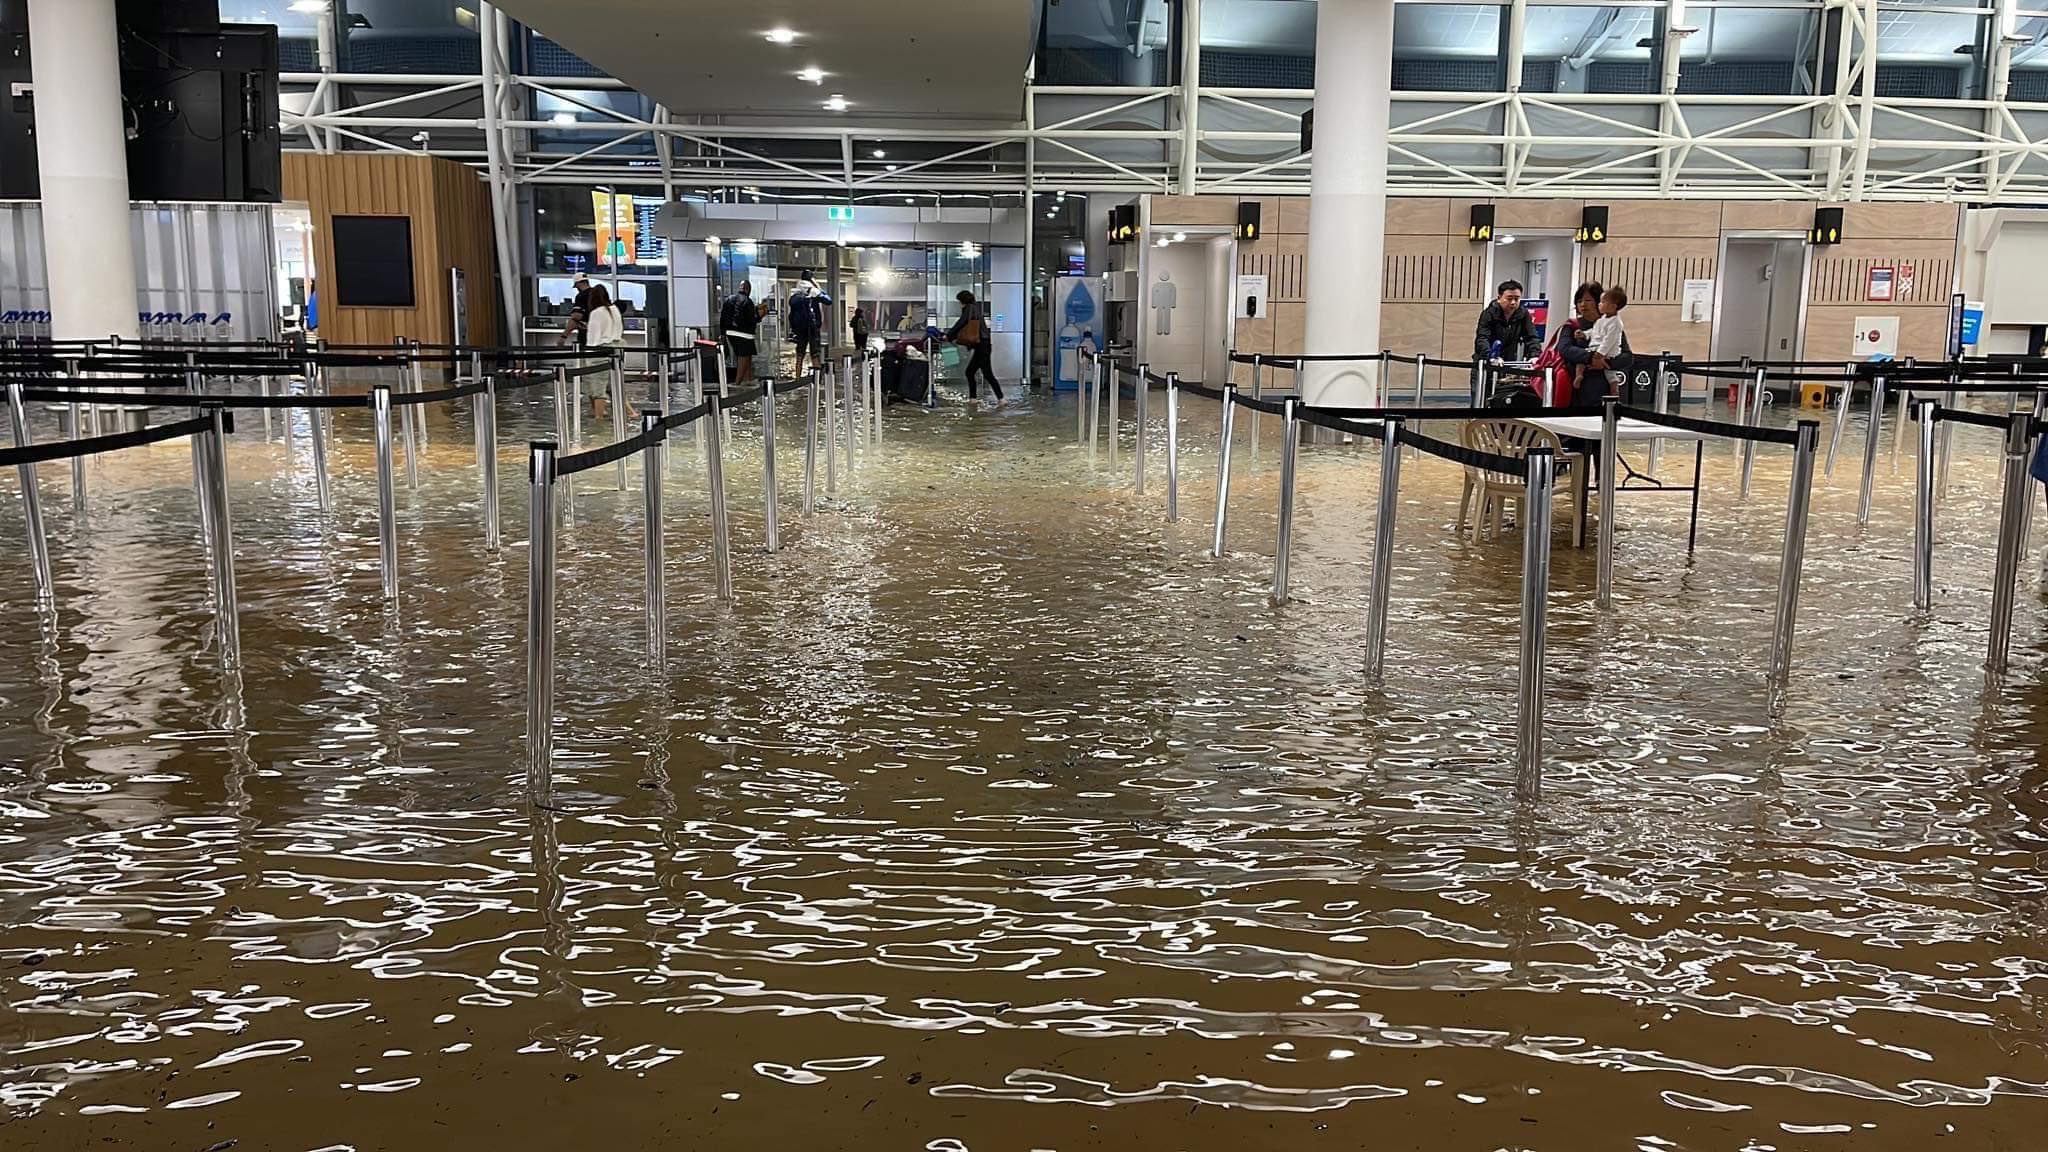 Ensimmäinen kansainvälinen matkustajalento lähtee Aucklandin lentokentältä vedenpaisumusten jälkeen